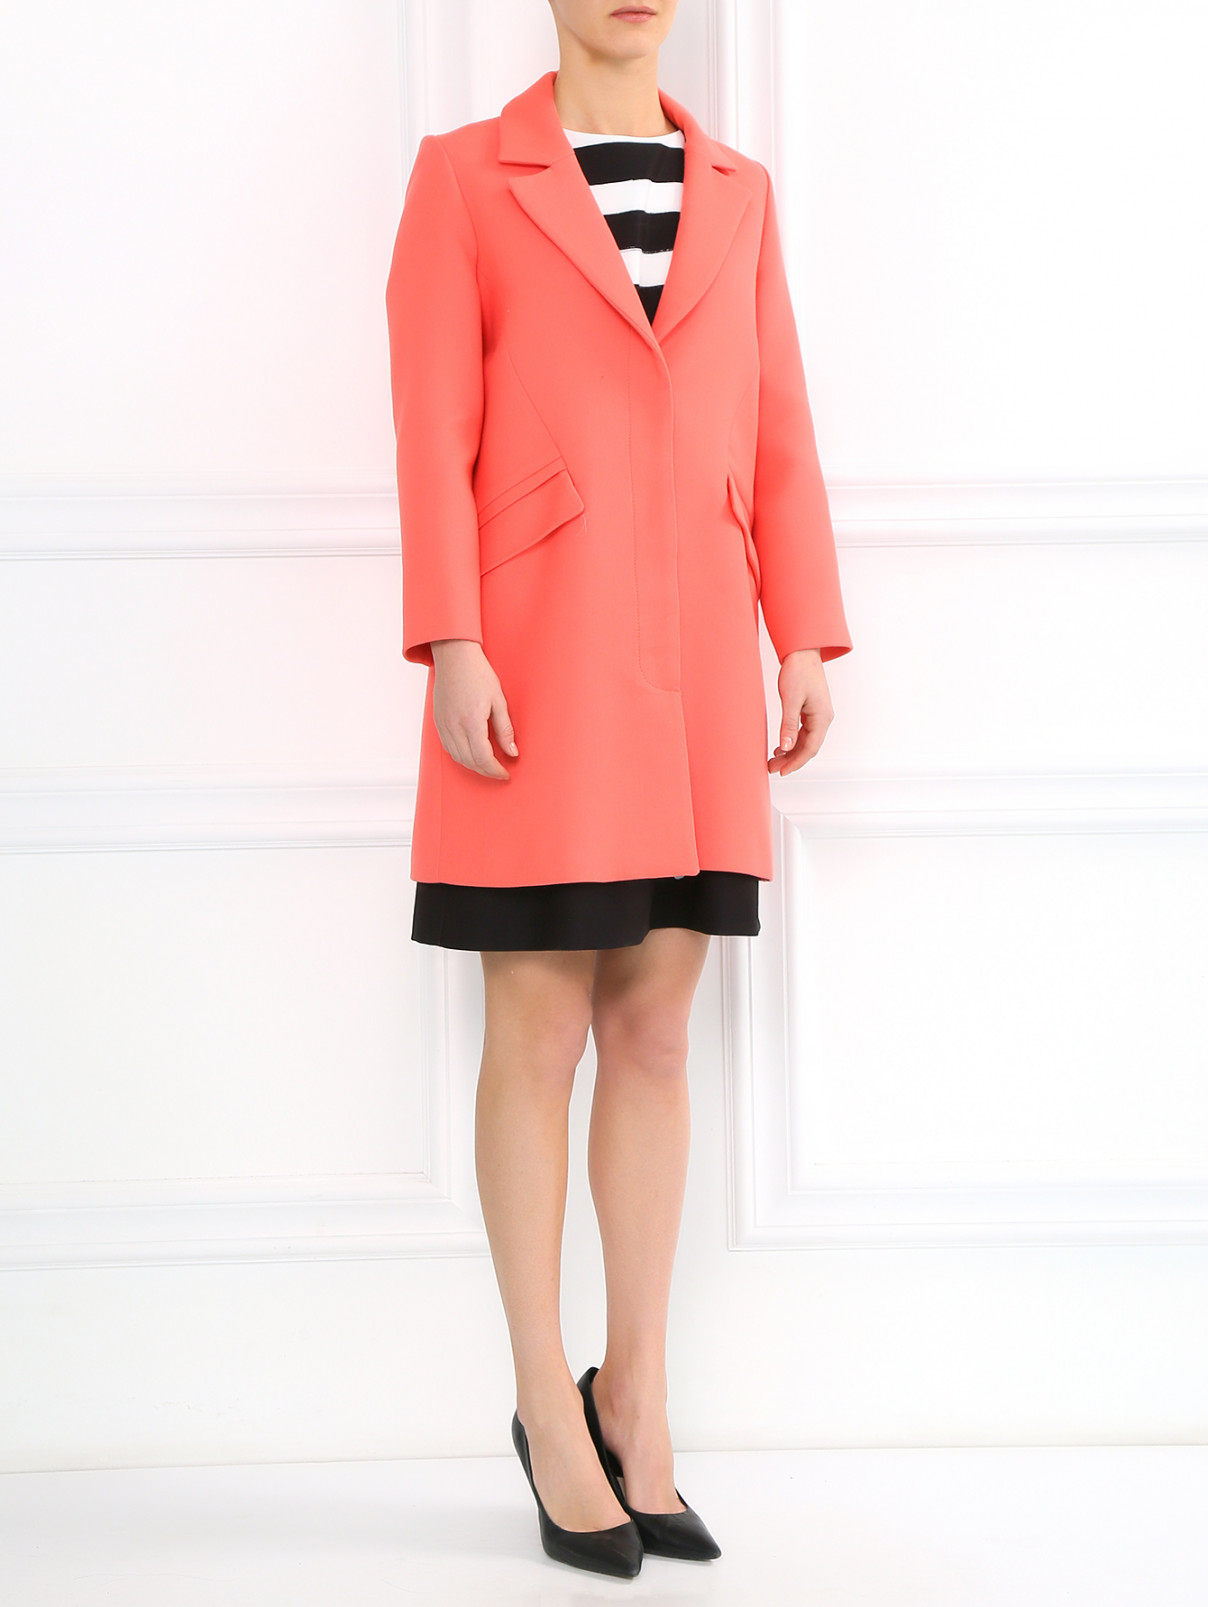 Пальто из хлопка с боковыми карманами Paul&Joe Sister  –  Модель Общий вид  – Цвет:  Розовый